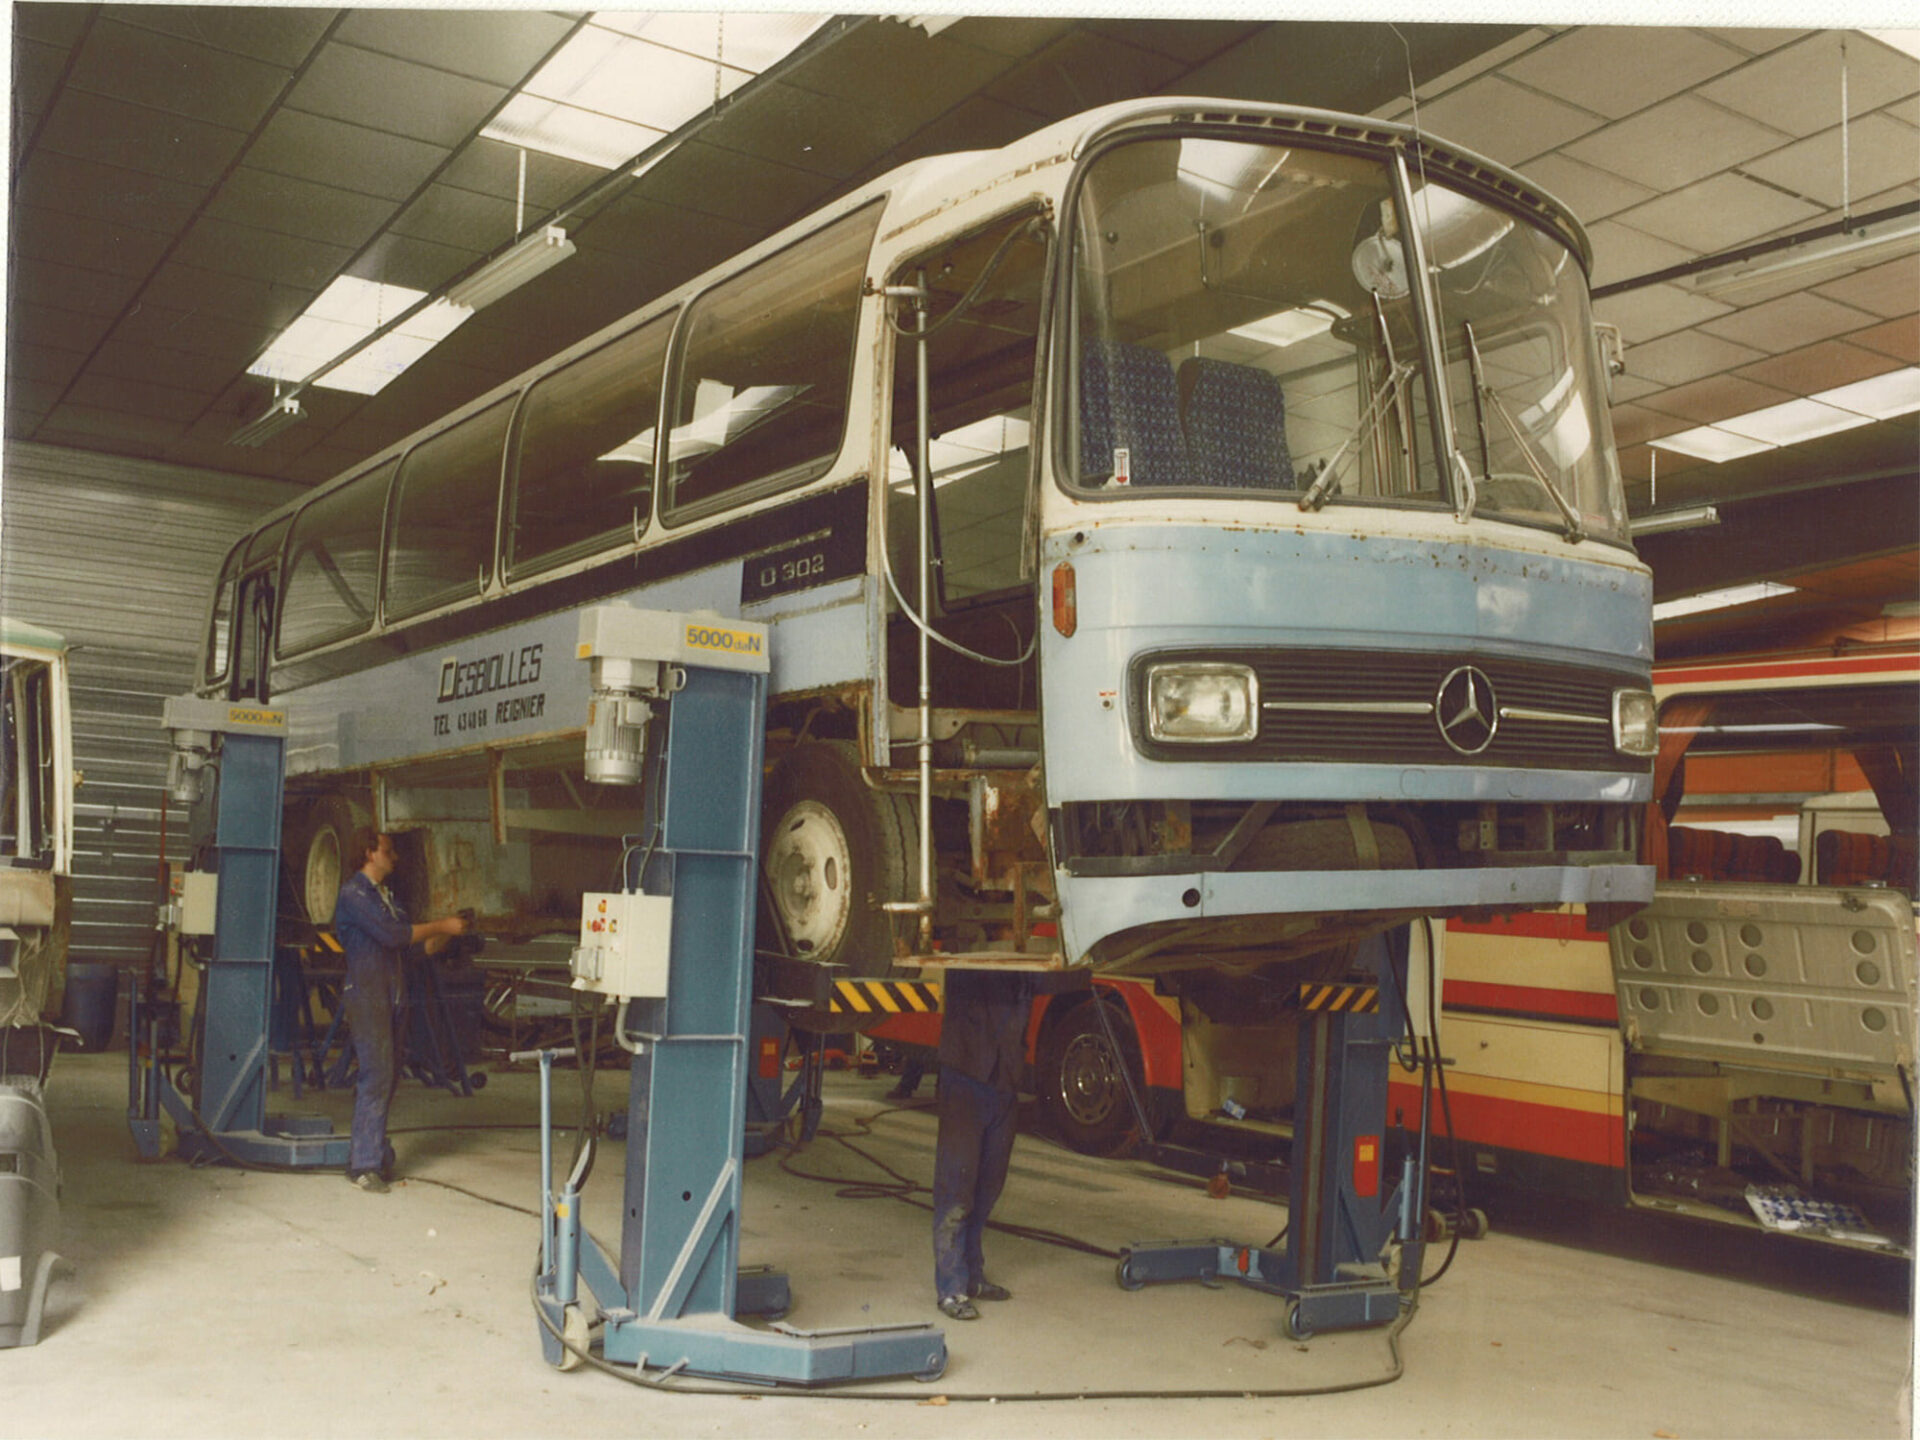 Histoire - History / Bus de 1981 dans un atelier de réparation